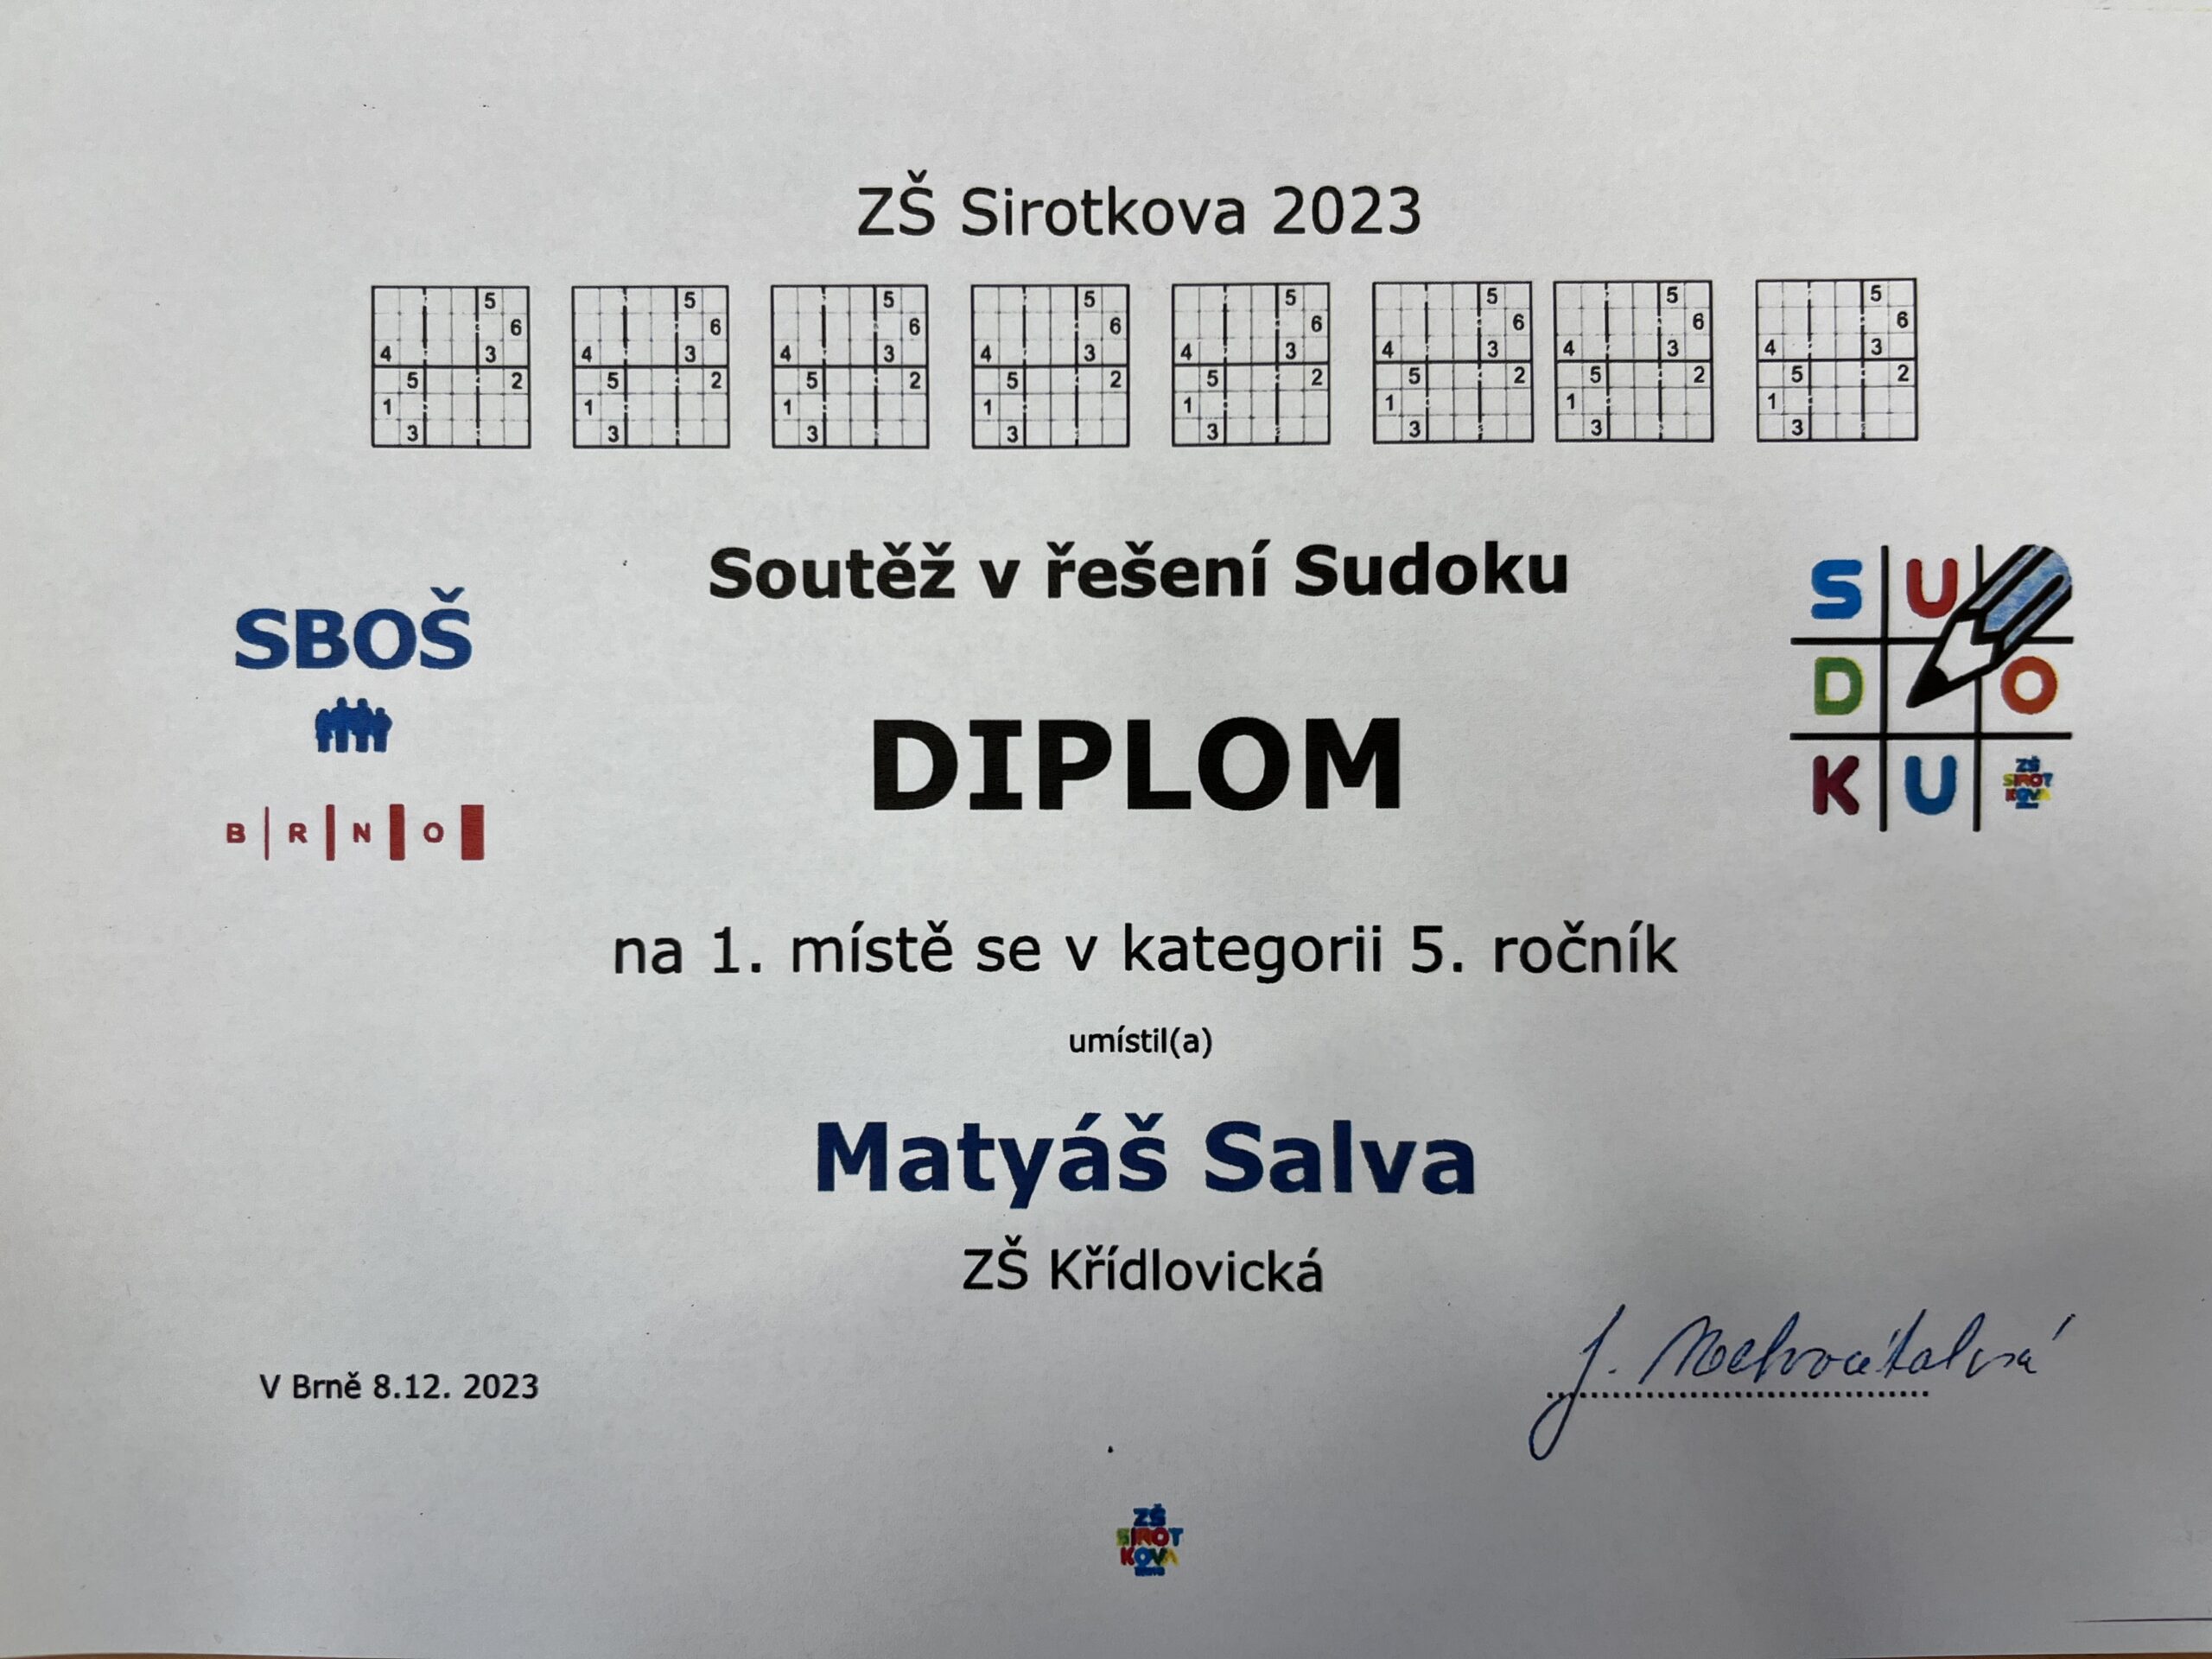 Výsledky vánočního turnaje SUDOKU na ZŠ Sirotkova